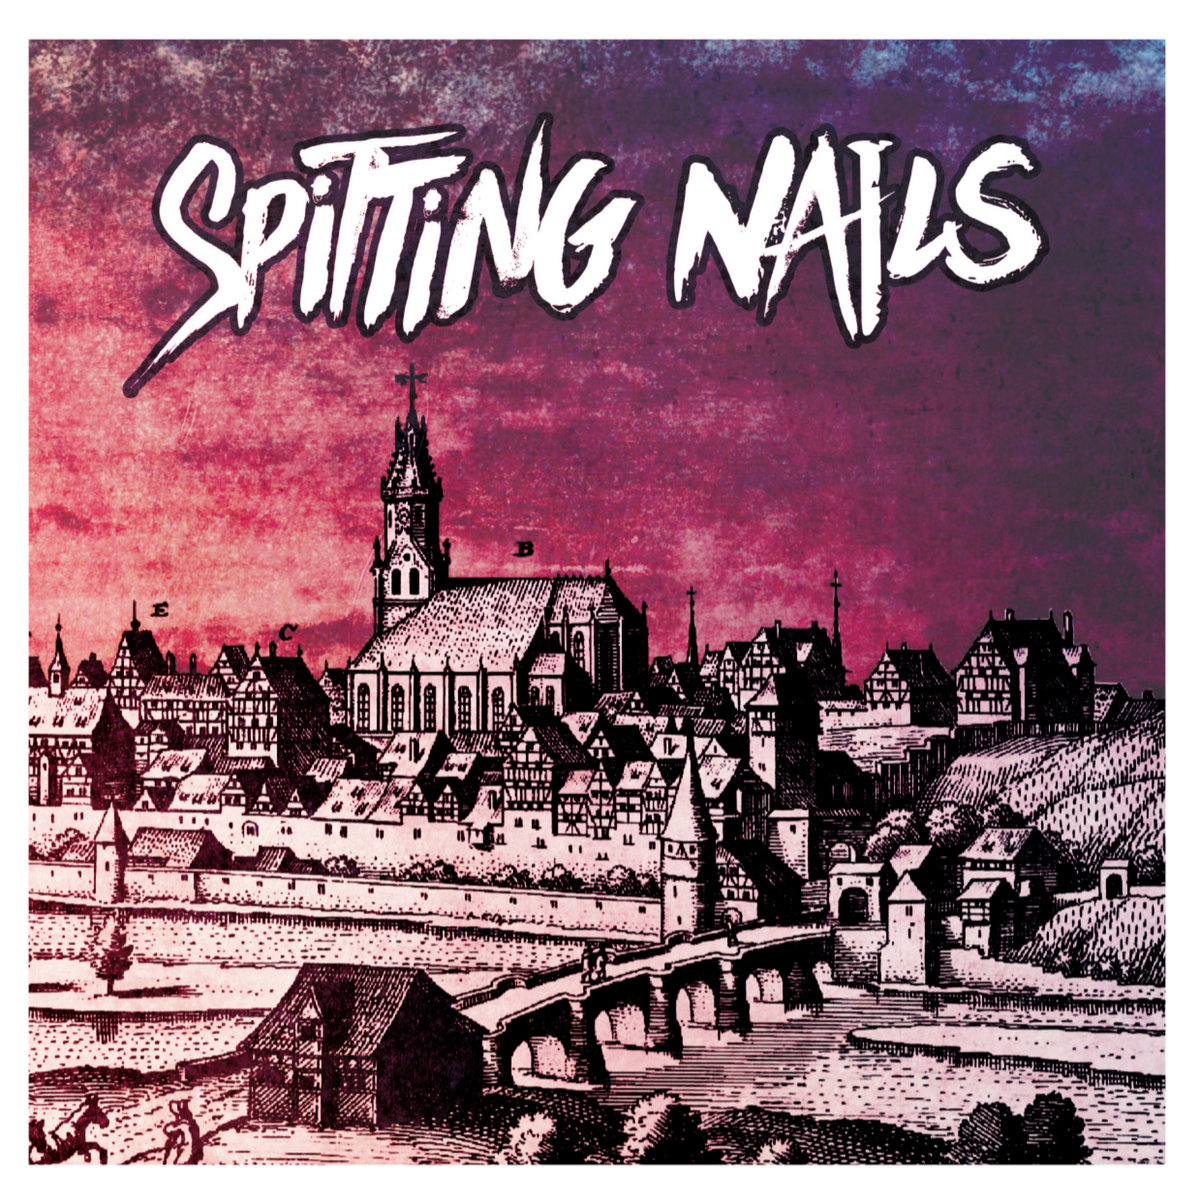 SPITTIG NAILS – Spitting Nails | 12"